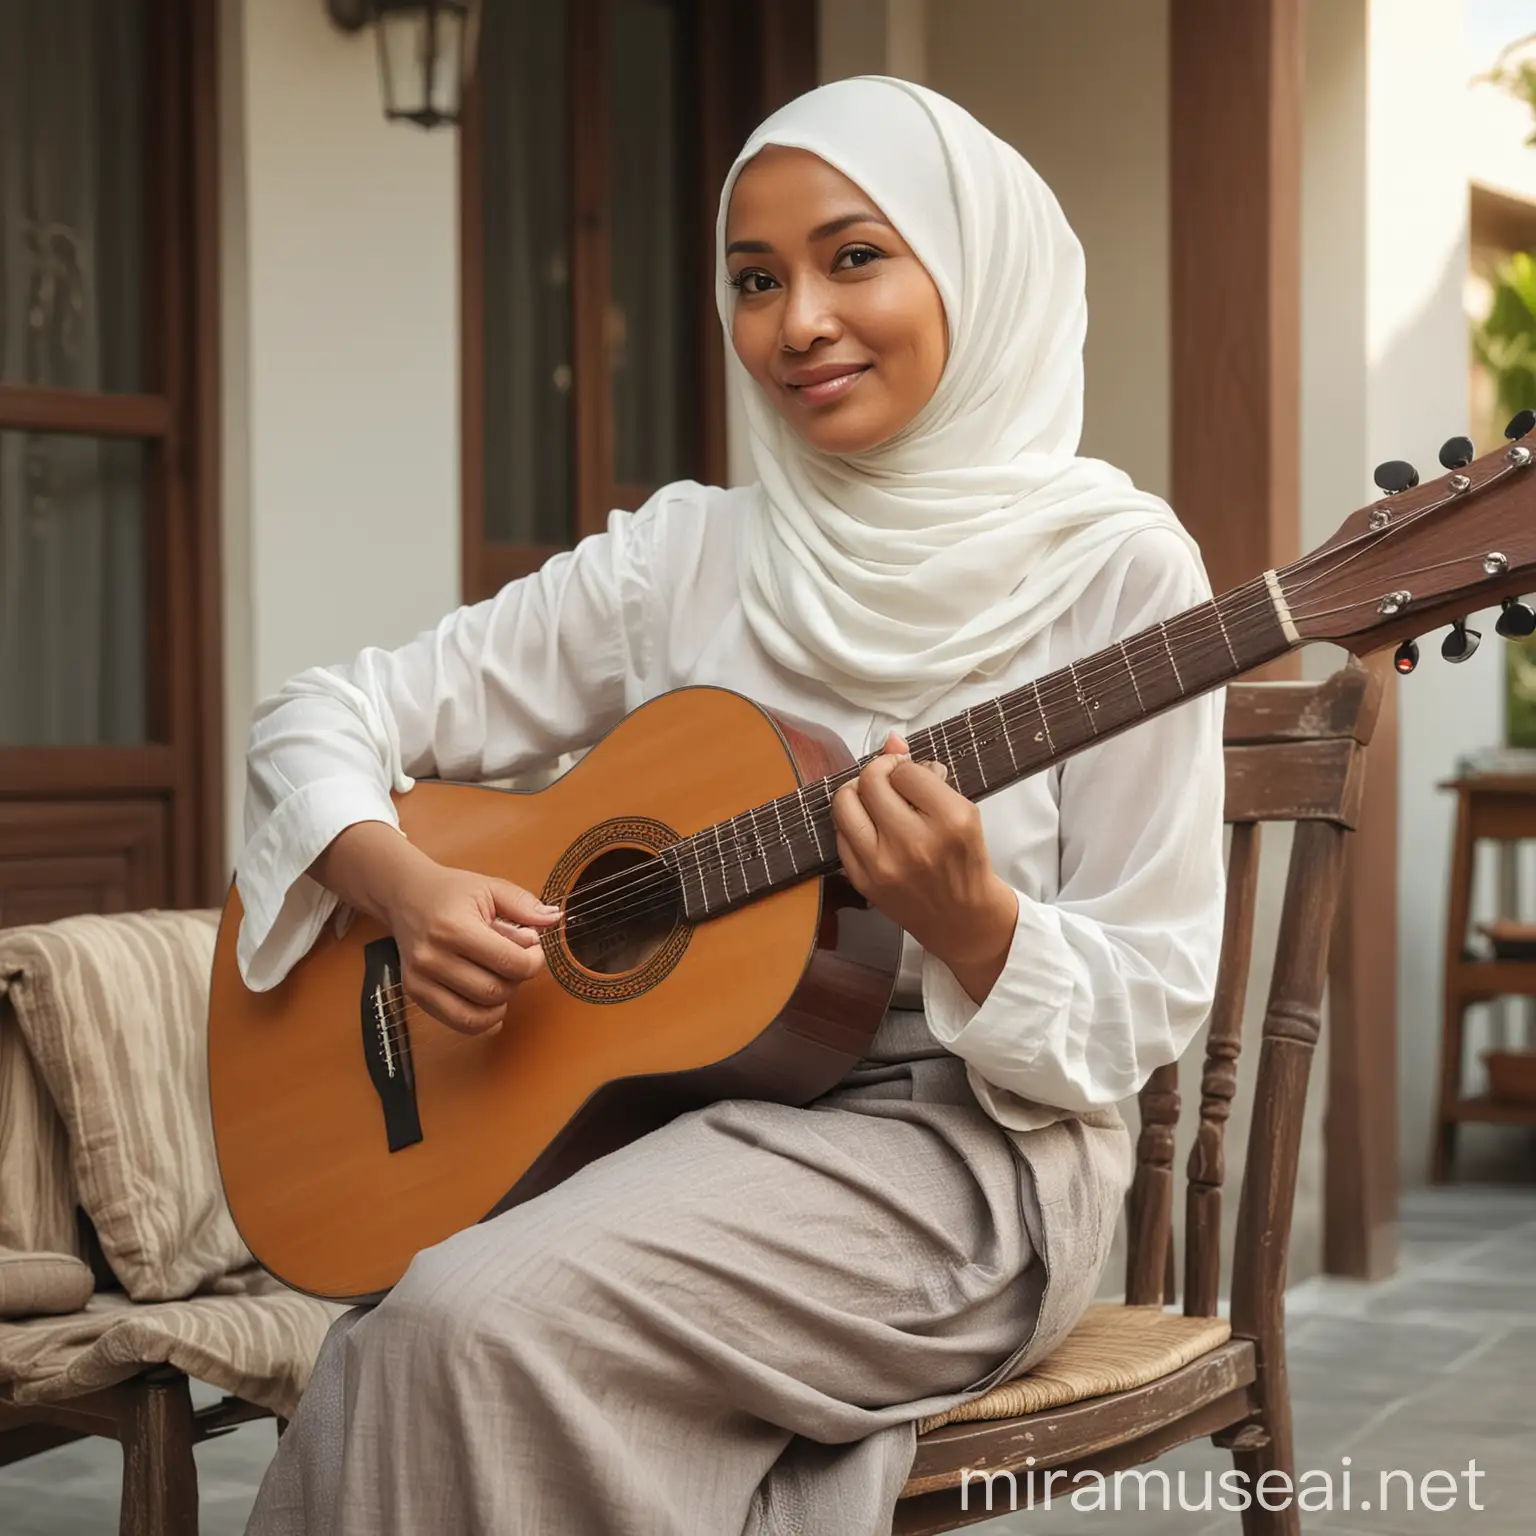 sebuah foto realistis seorang wanita cantik asal Indonesia usia 50 tahun, berhijab, wajah bulat , duduk di kursi di depan teras rumah, memainkan sebuah gitar, suasana siang hari, cahaya cukup terang, sangat nyata, full hd, fokus tajam tanpa cacat,